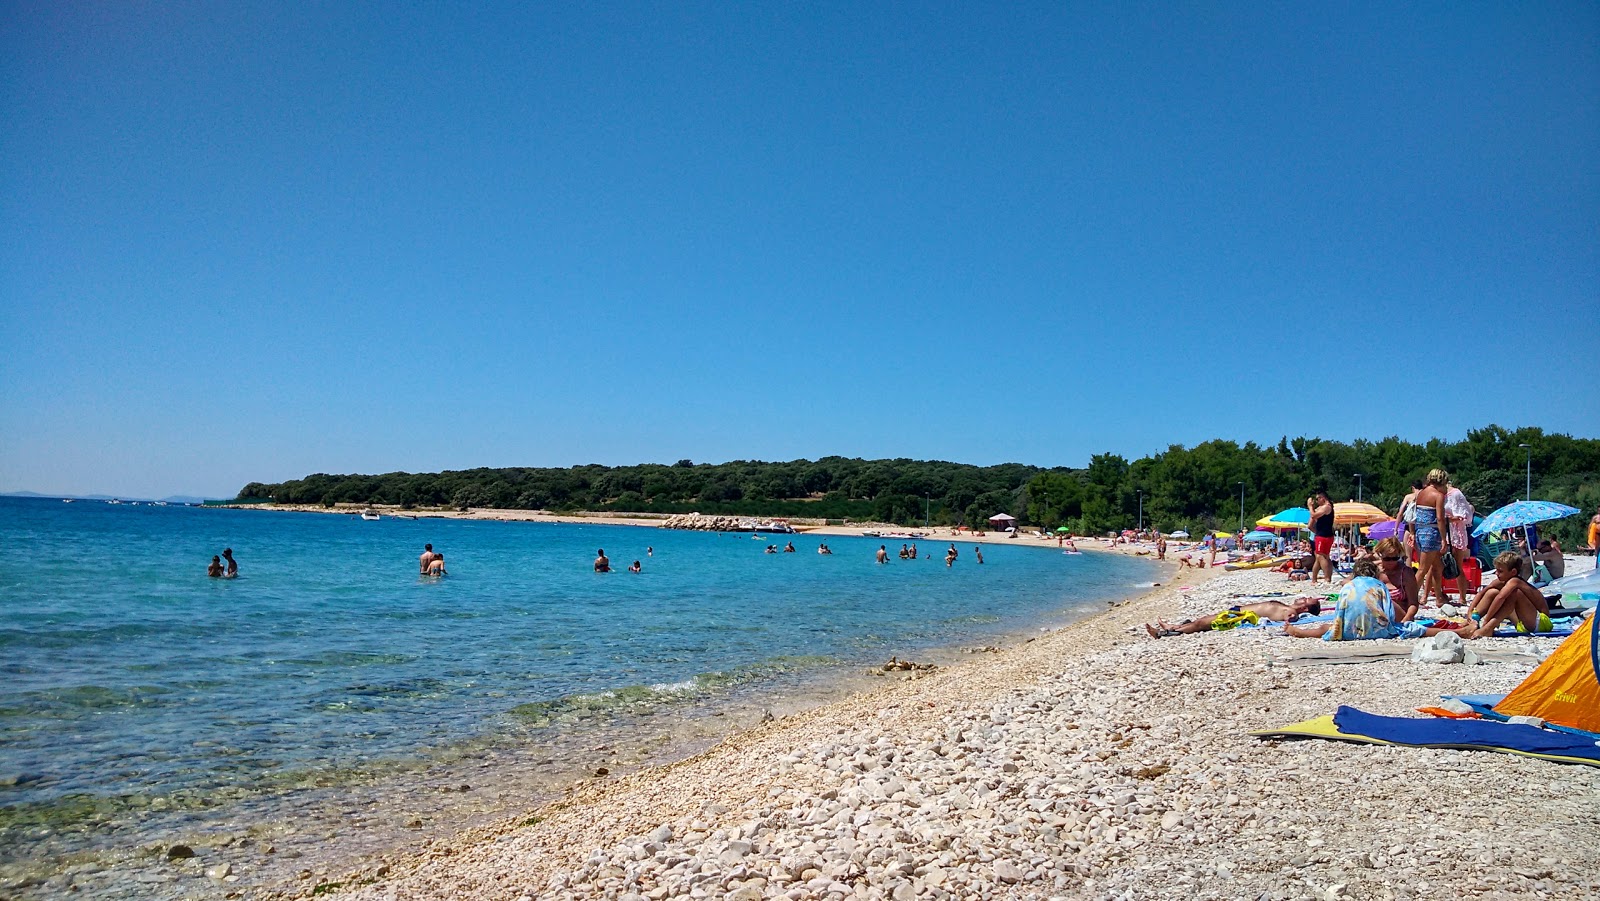 Gajac beach'in fotoğrafı hafif çakıl yüzey ile